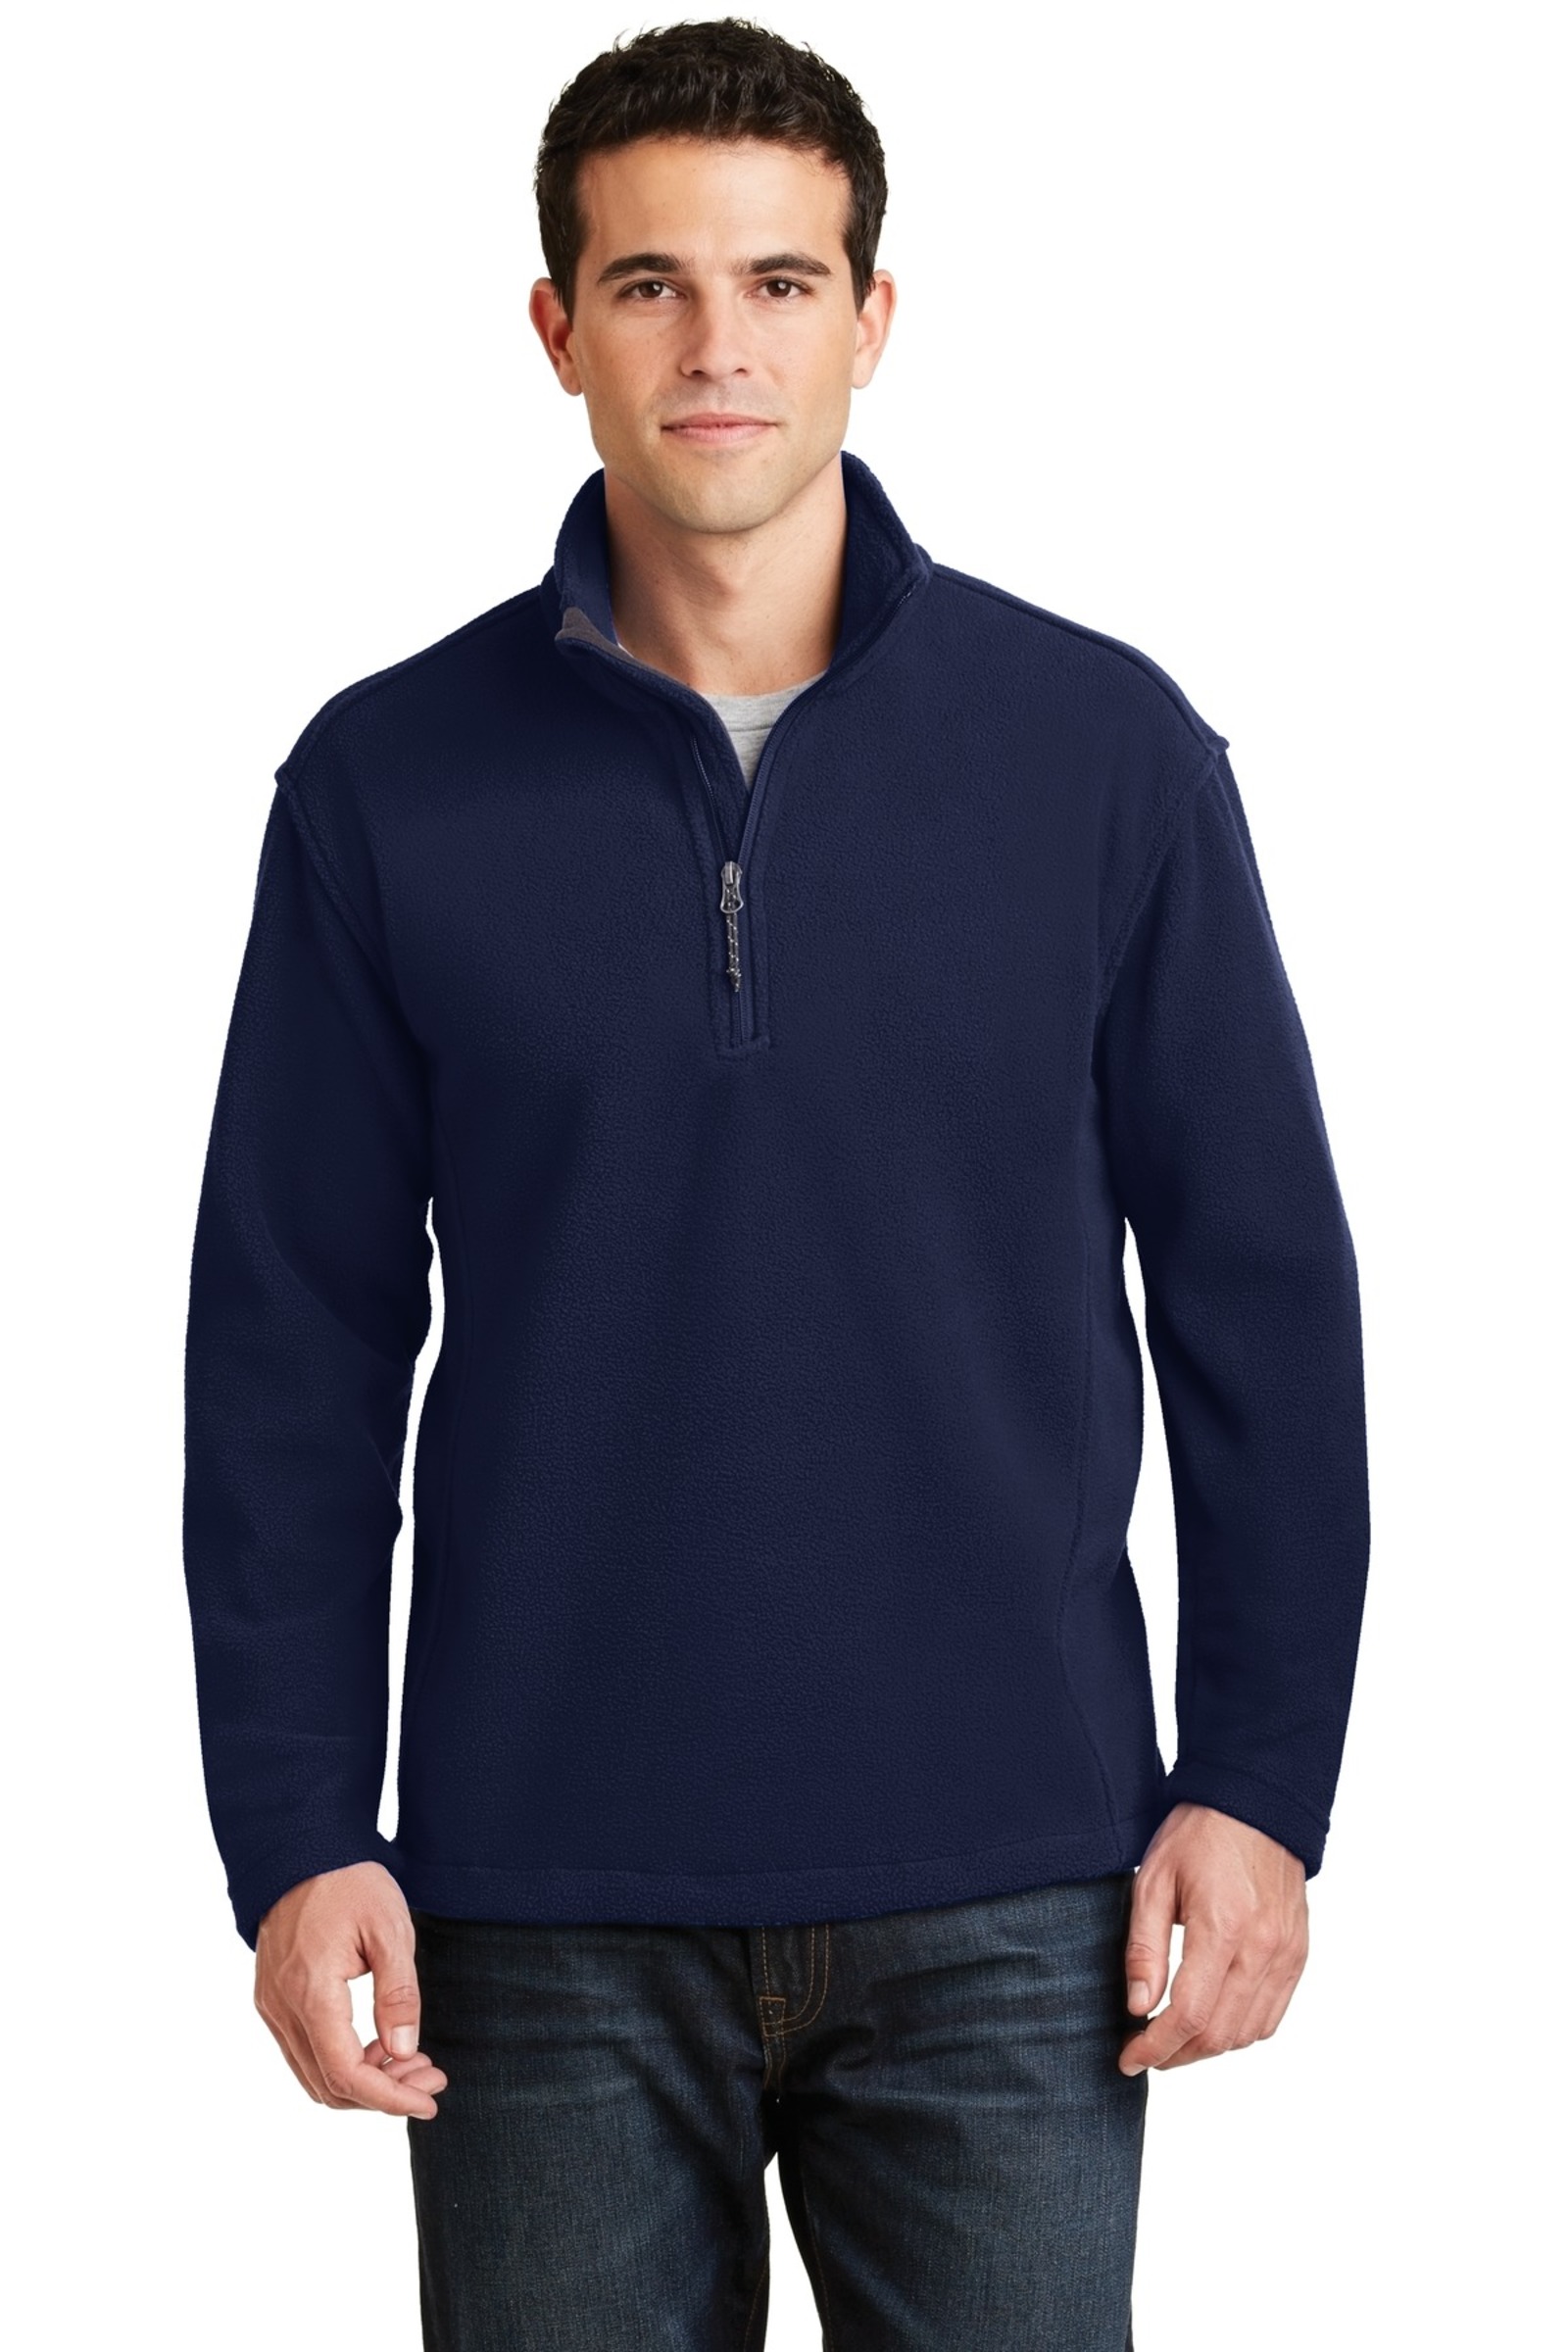 Port Authority Embroidered Men's Value Fleece 1/4-Zip Pullover | Fleece ...